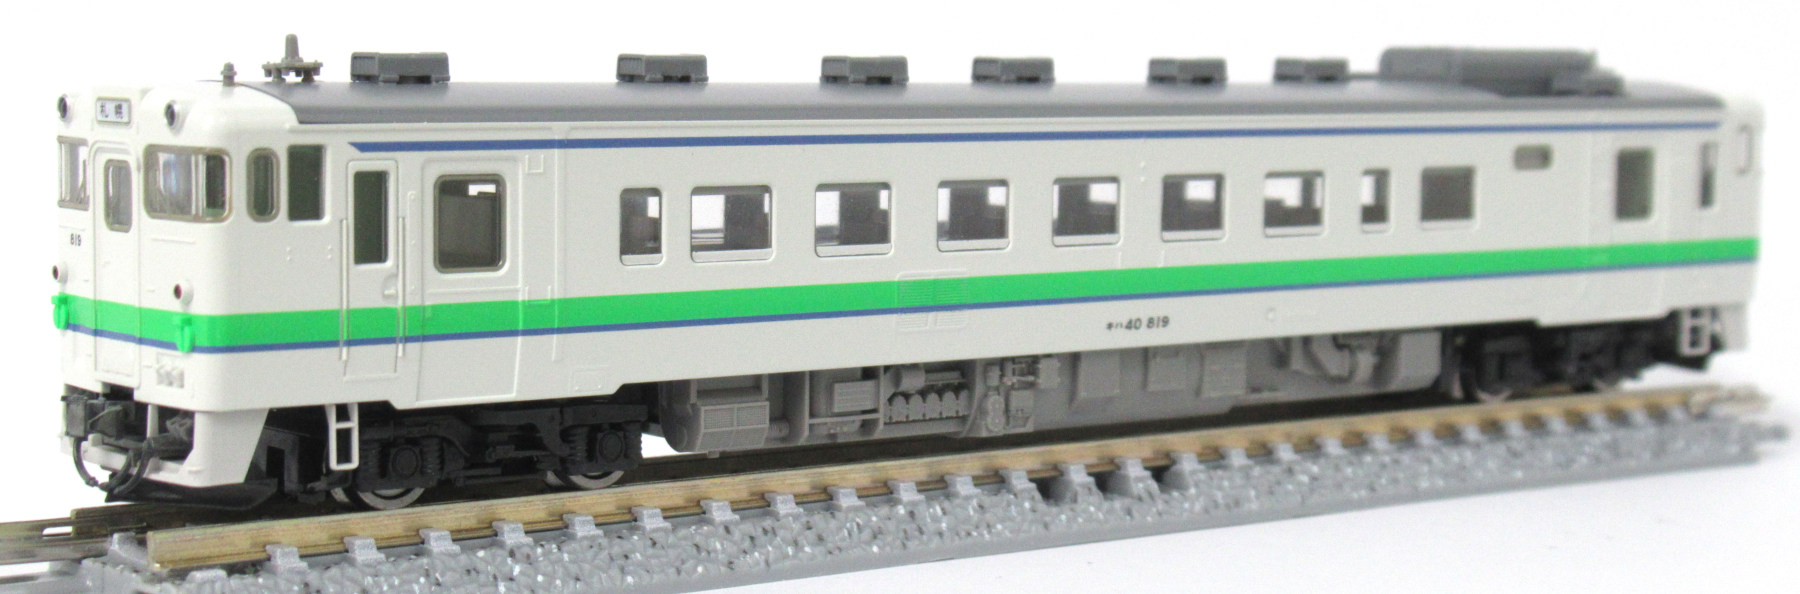 鉄道模型40系 特急気動車セット - pichlingerhof.at